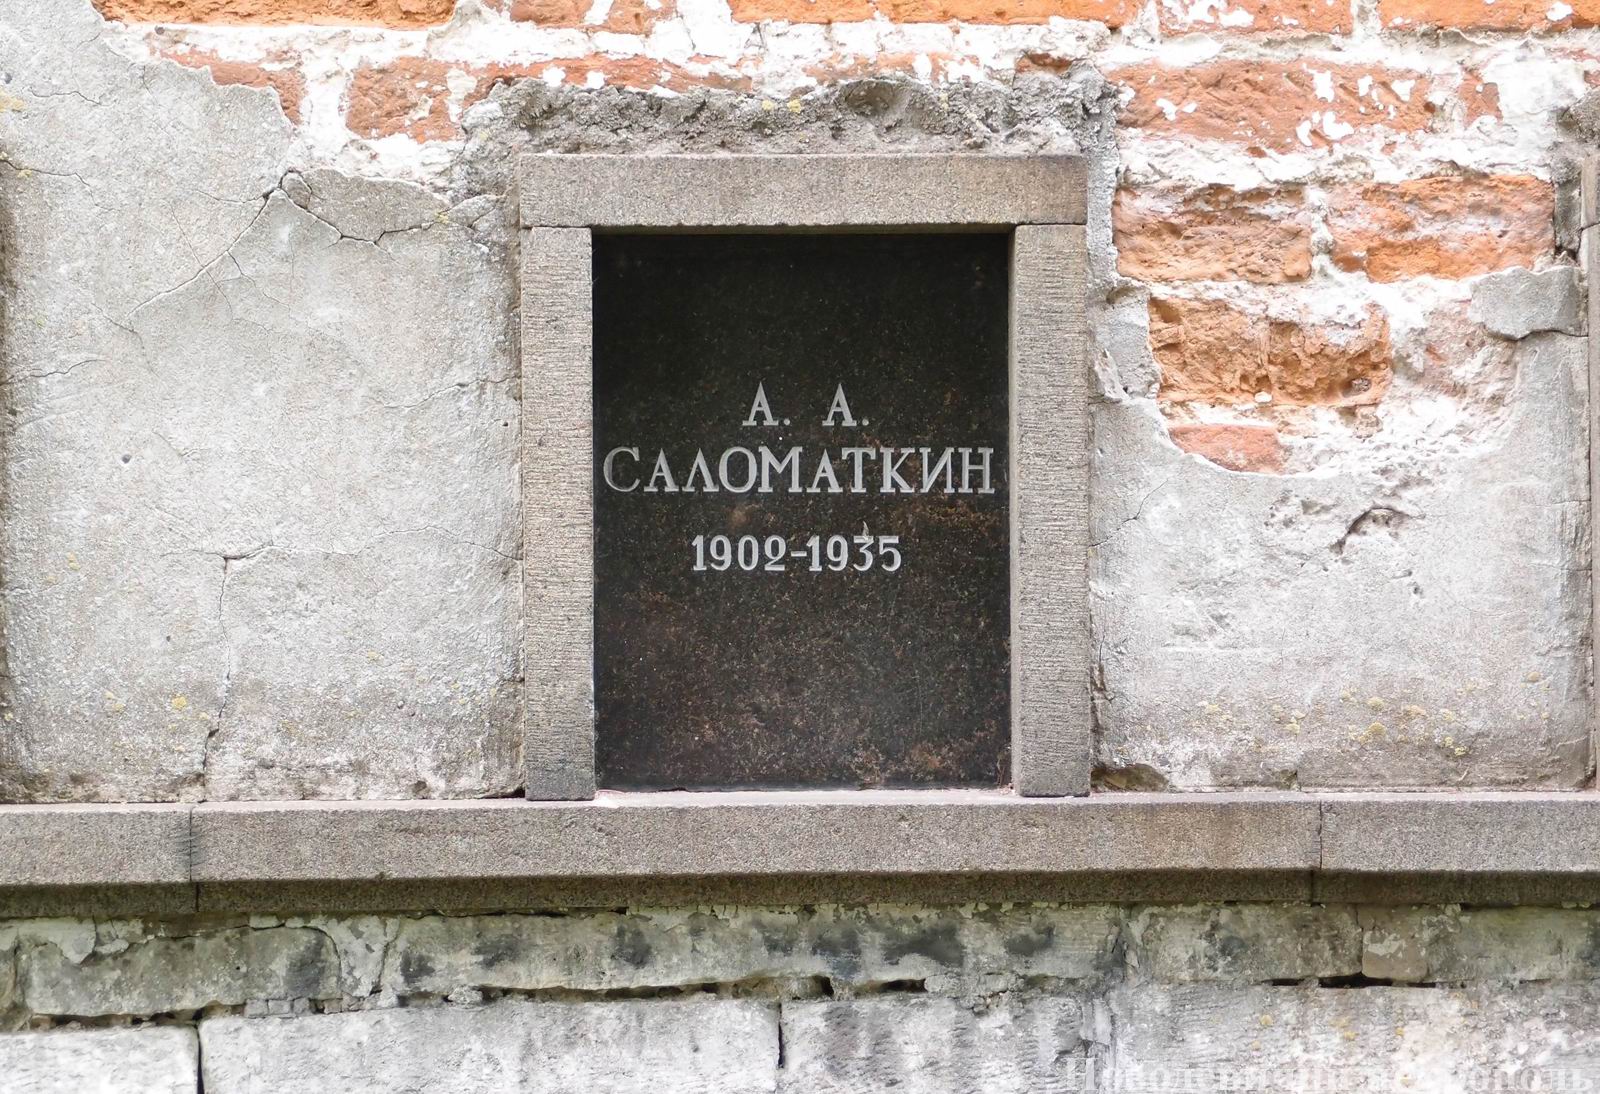 Плита на нише Саломаткина А.А. (1902–1935), на Новодевичьем кладбище (колумбарий [3]–19). Нажмите левую кнопку мыши, чтобы увидеть общий вид секции.